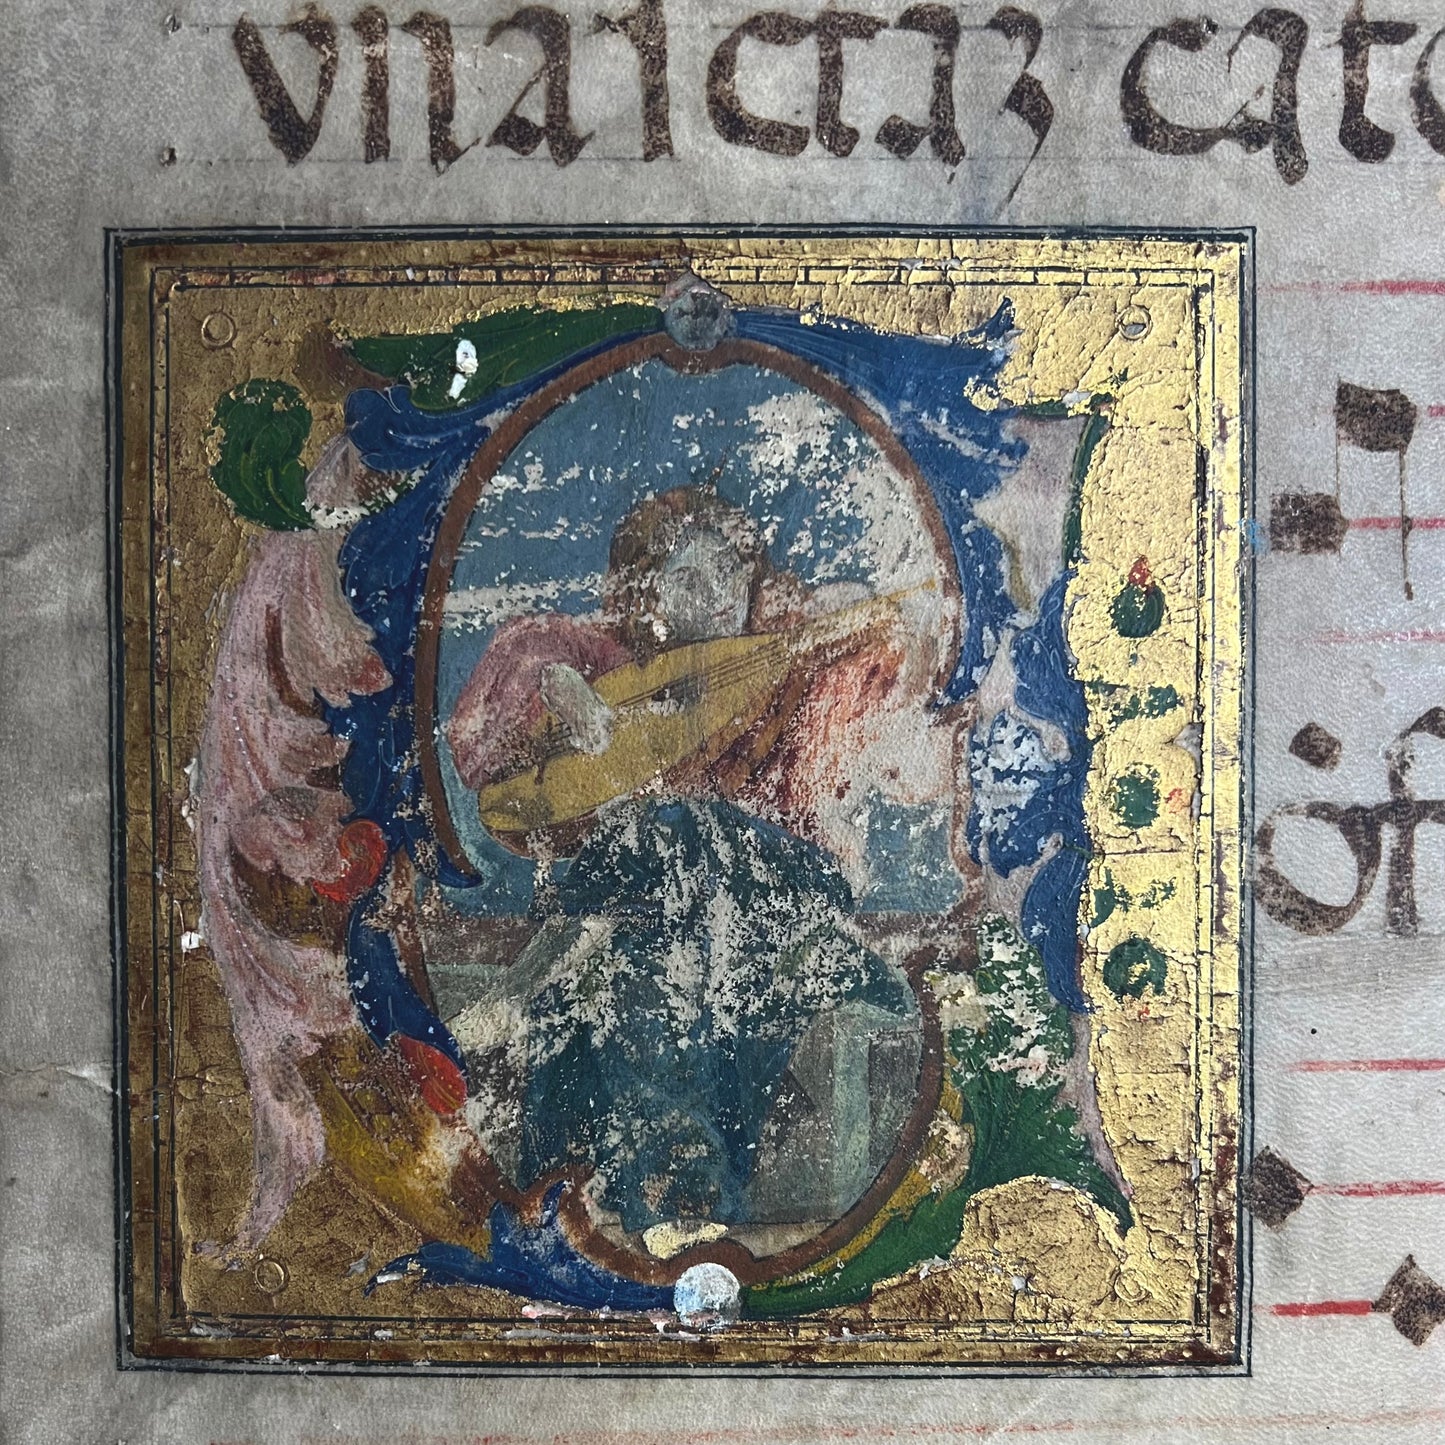 Rare Medieval Illuminated Manuscript c.1440